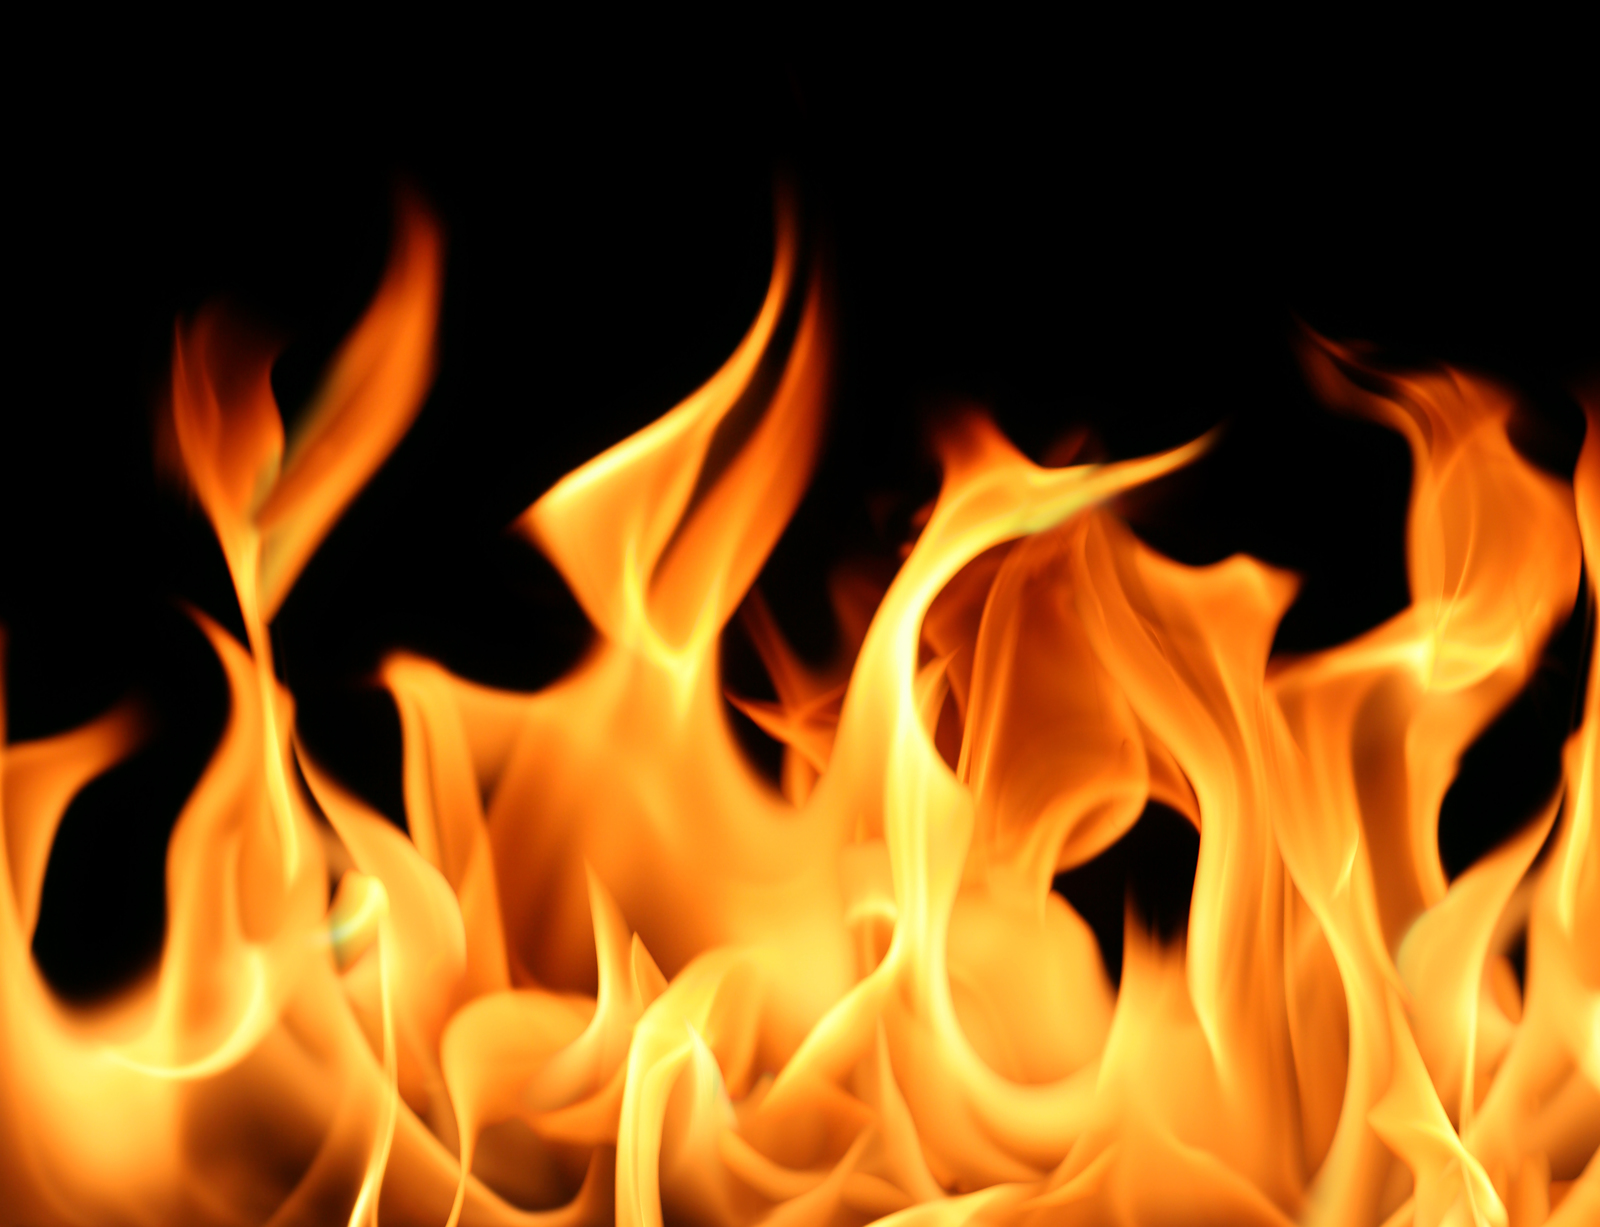 in flames wallpaper,fire,flame,heat,orange,gas